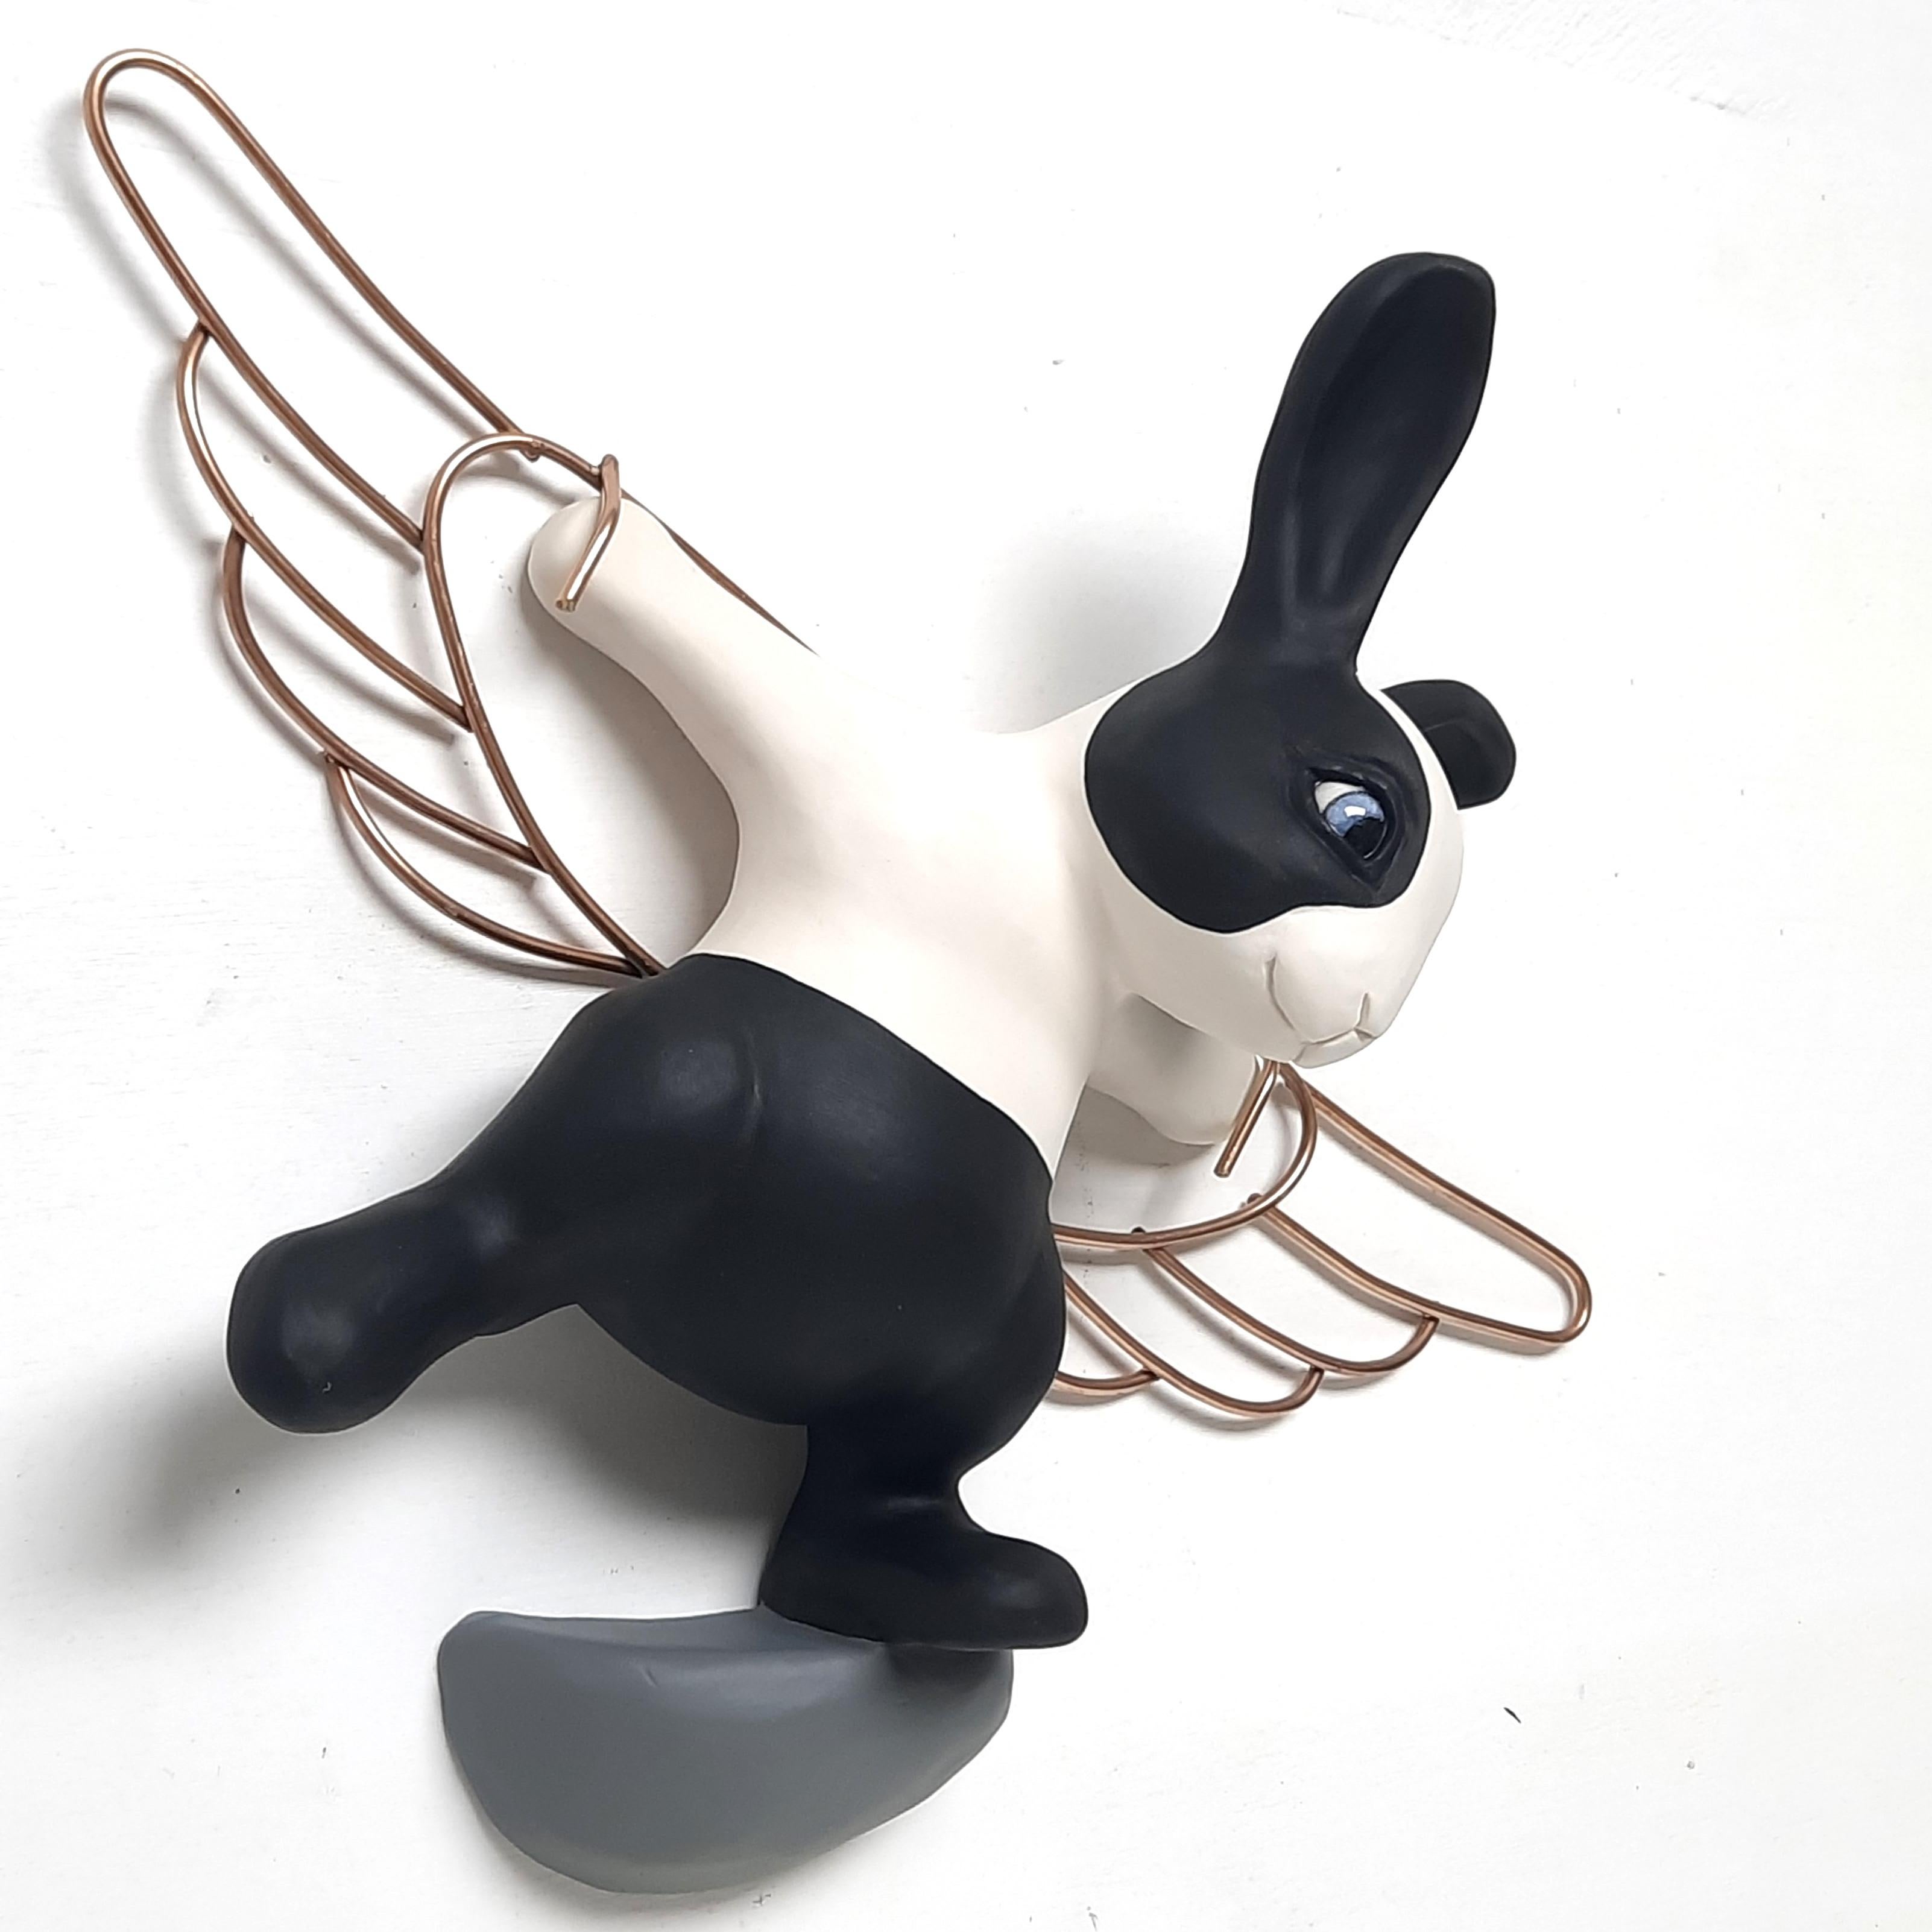 Feel like flying-original realism wildlife sculpture-PAINTING-contemporary Art - Modern Sculpture by Henk Jan Sanderman